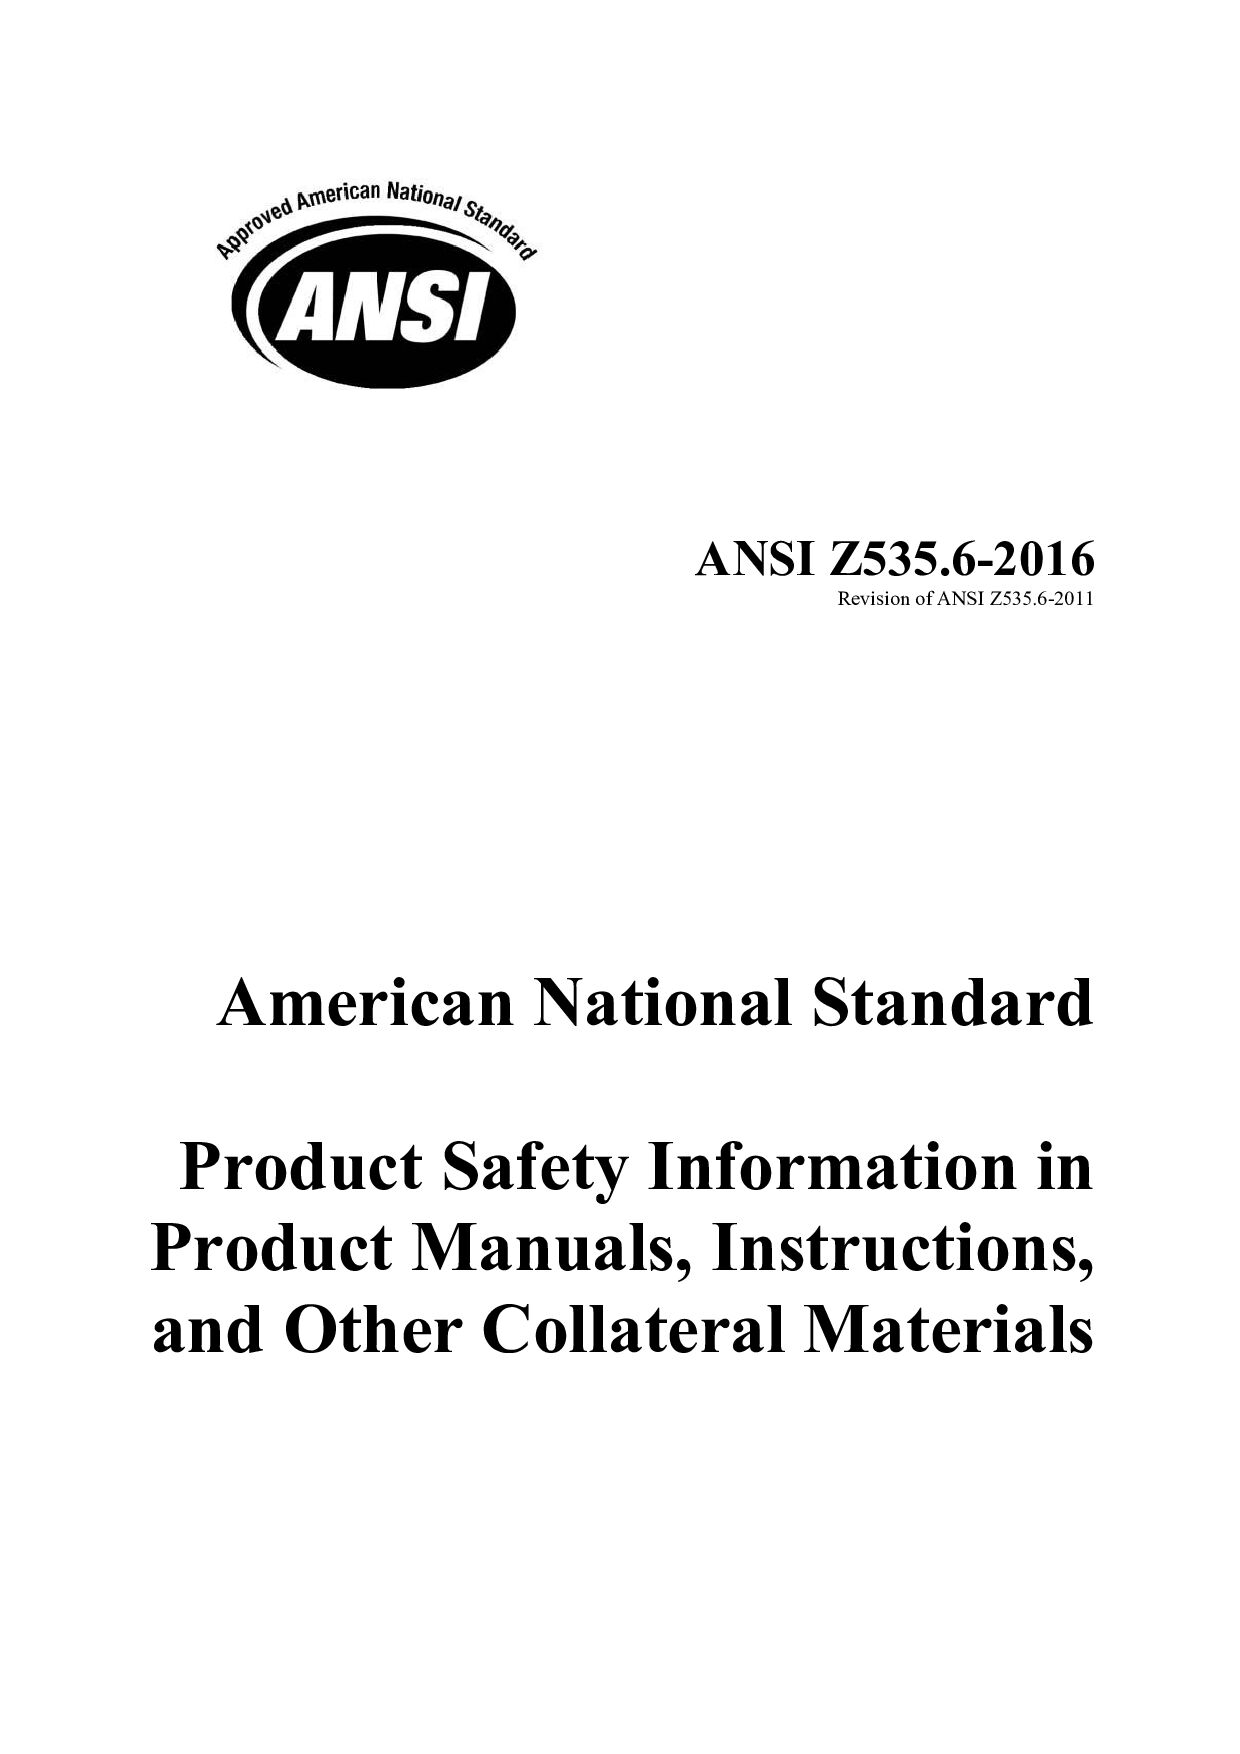 ANSI Z535.6-2016 draft